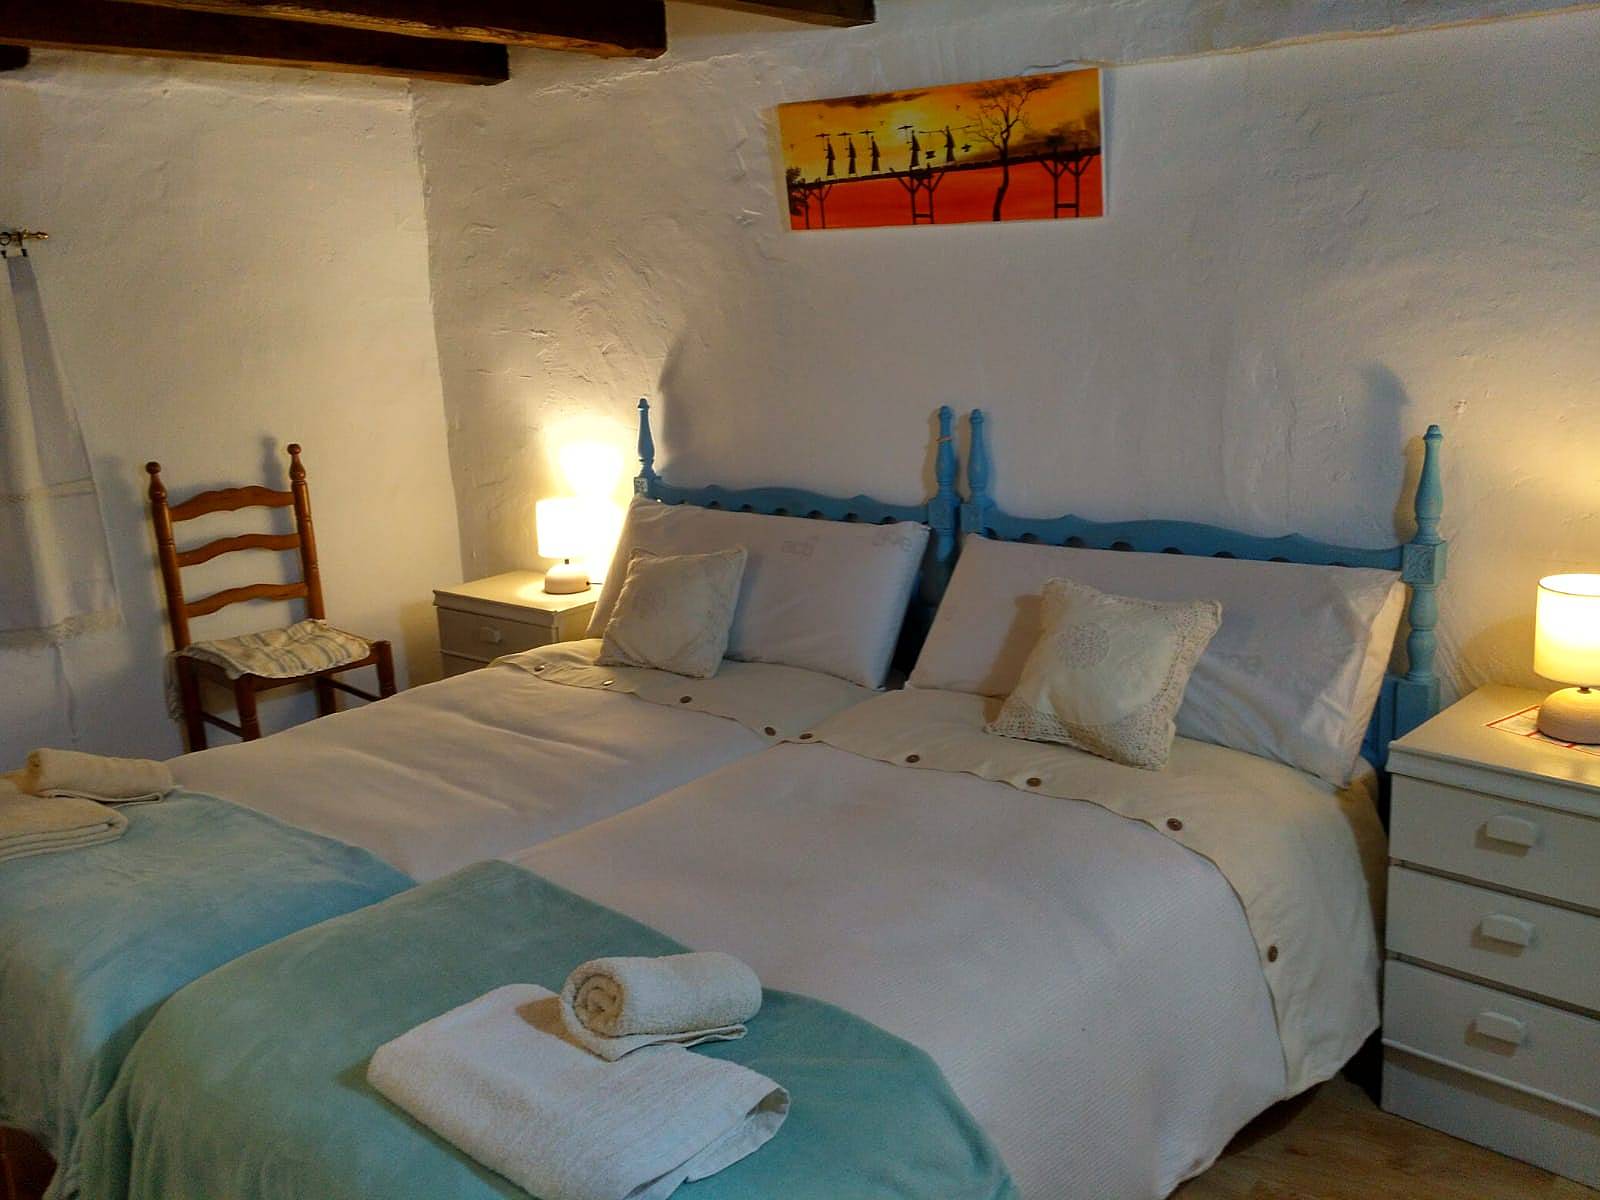 escotilla élite sala Alquiler vacaciones, apartamentos y casas rurales en Serranía de Cuenca